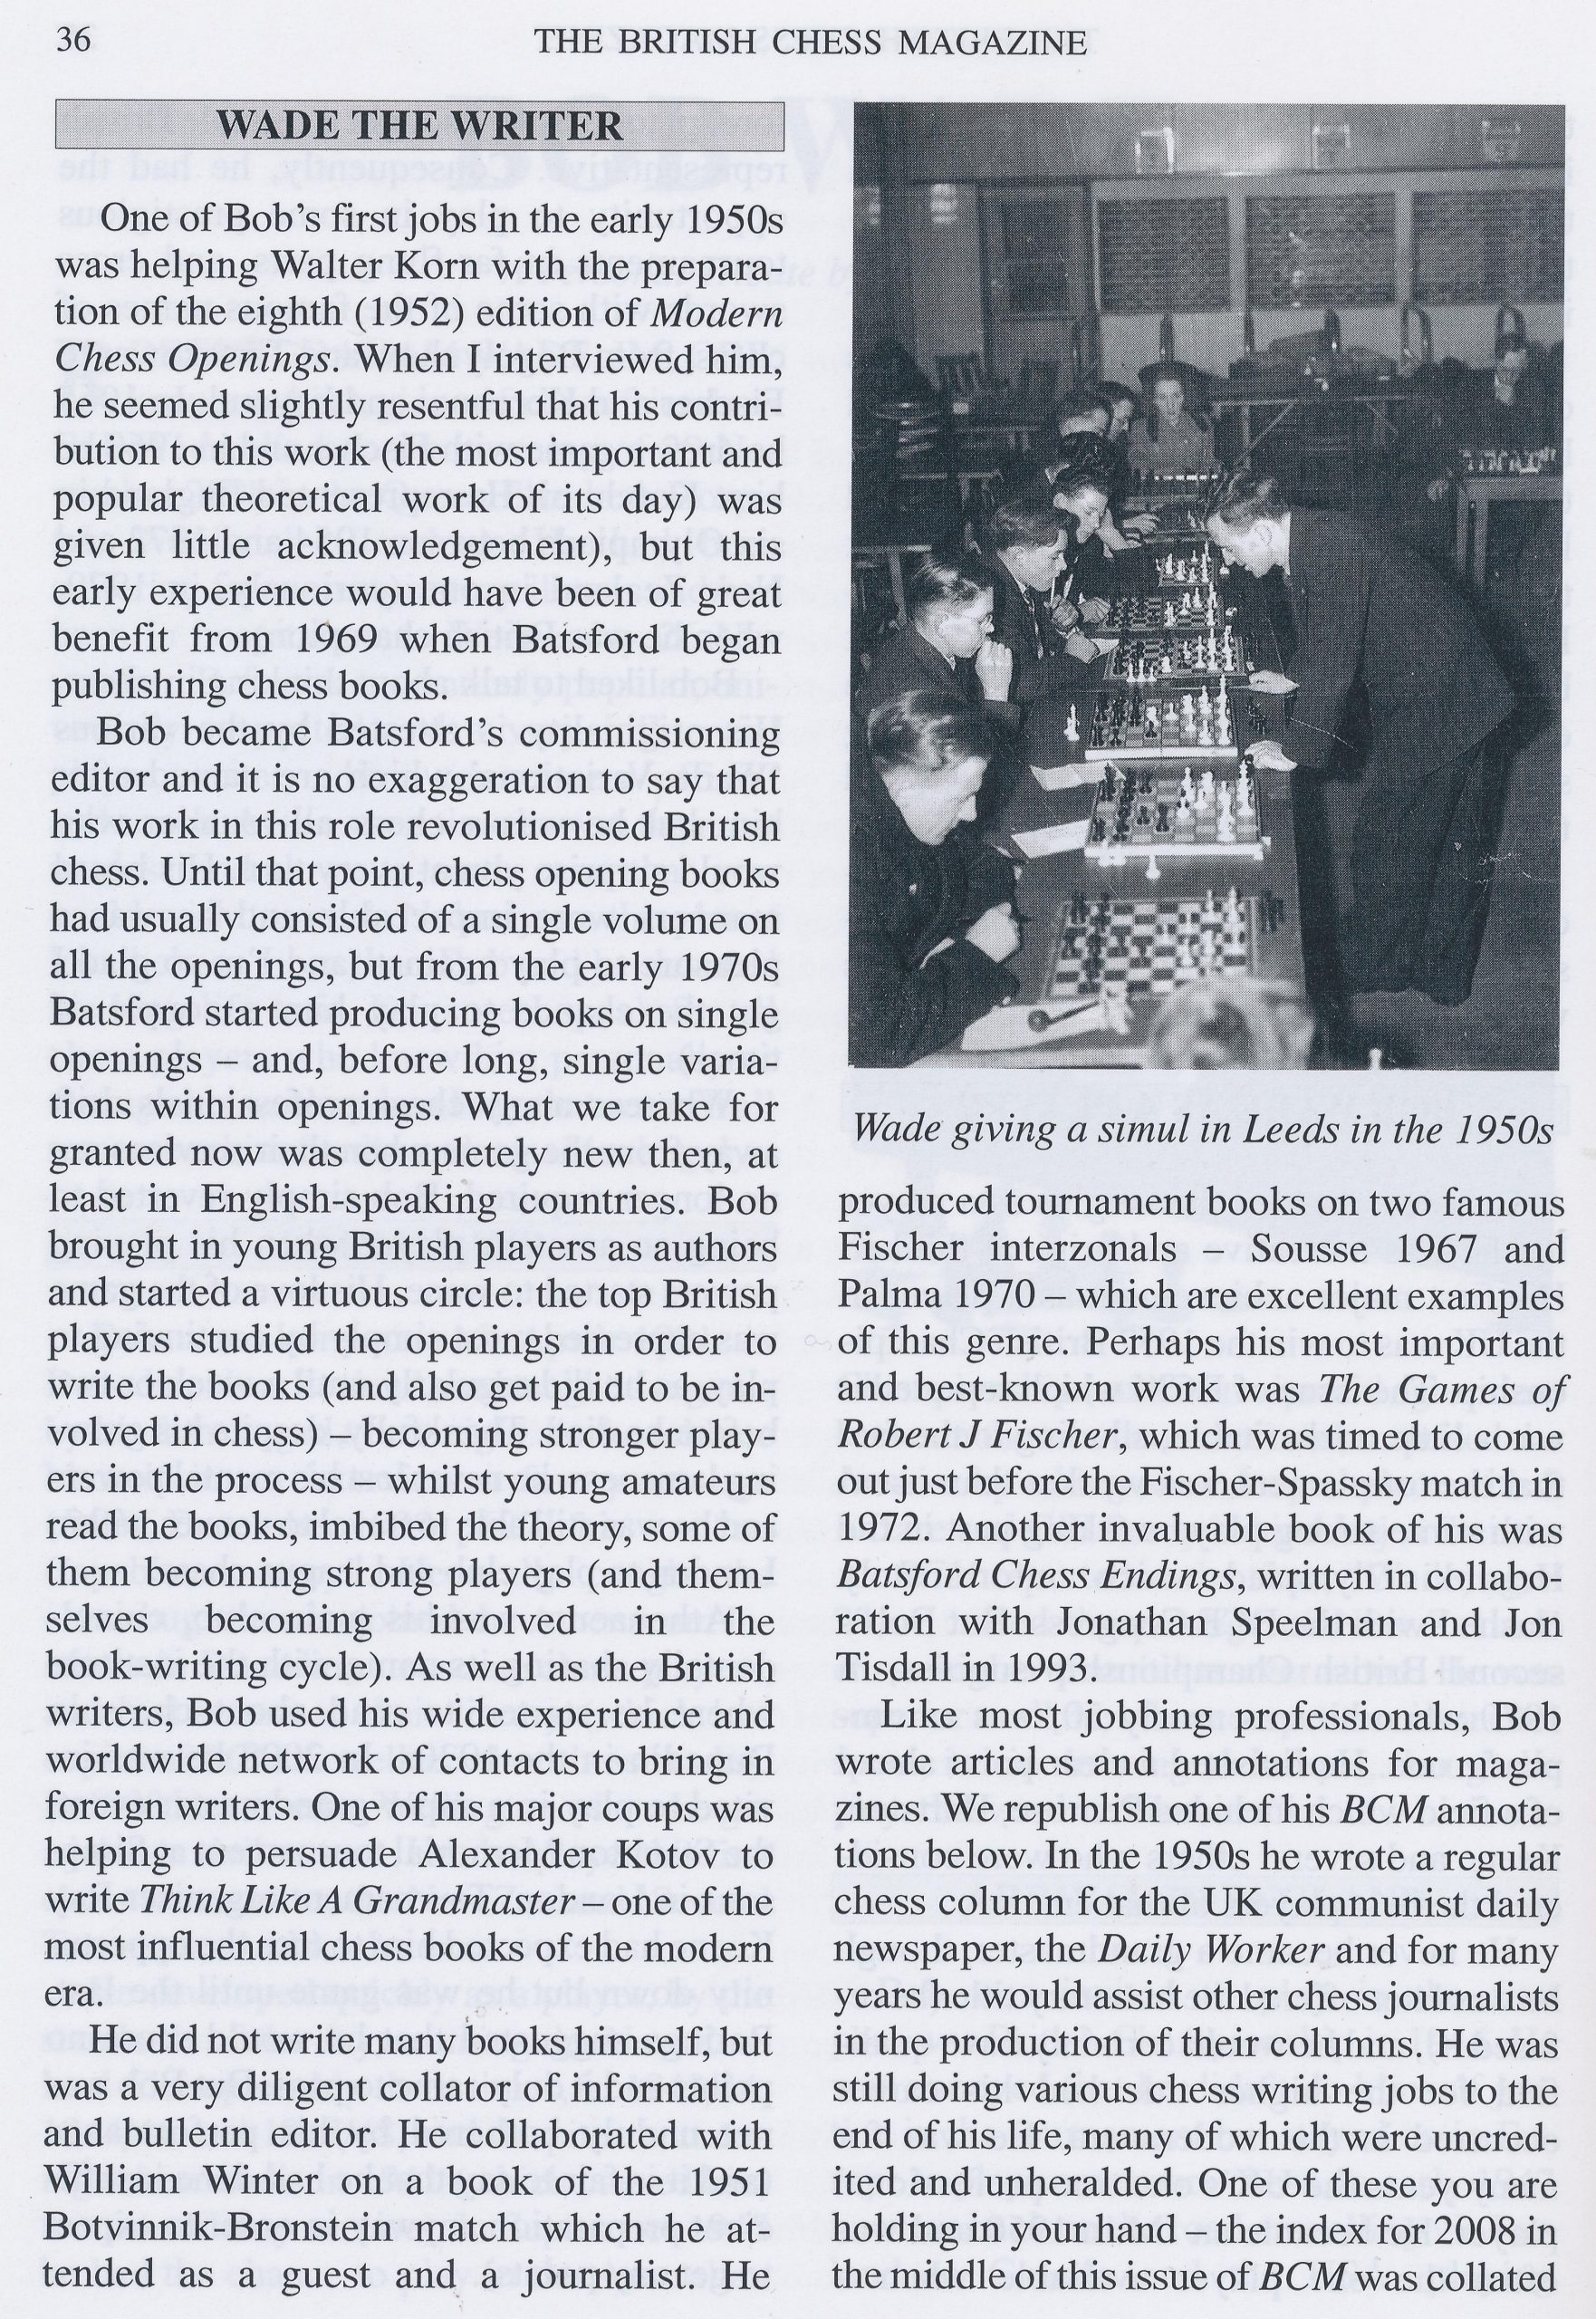 British Chess Magazine, Volume CXXIX (129, 2009), #1 (January), pp. 34-43